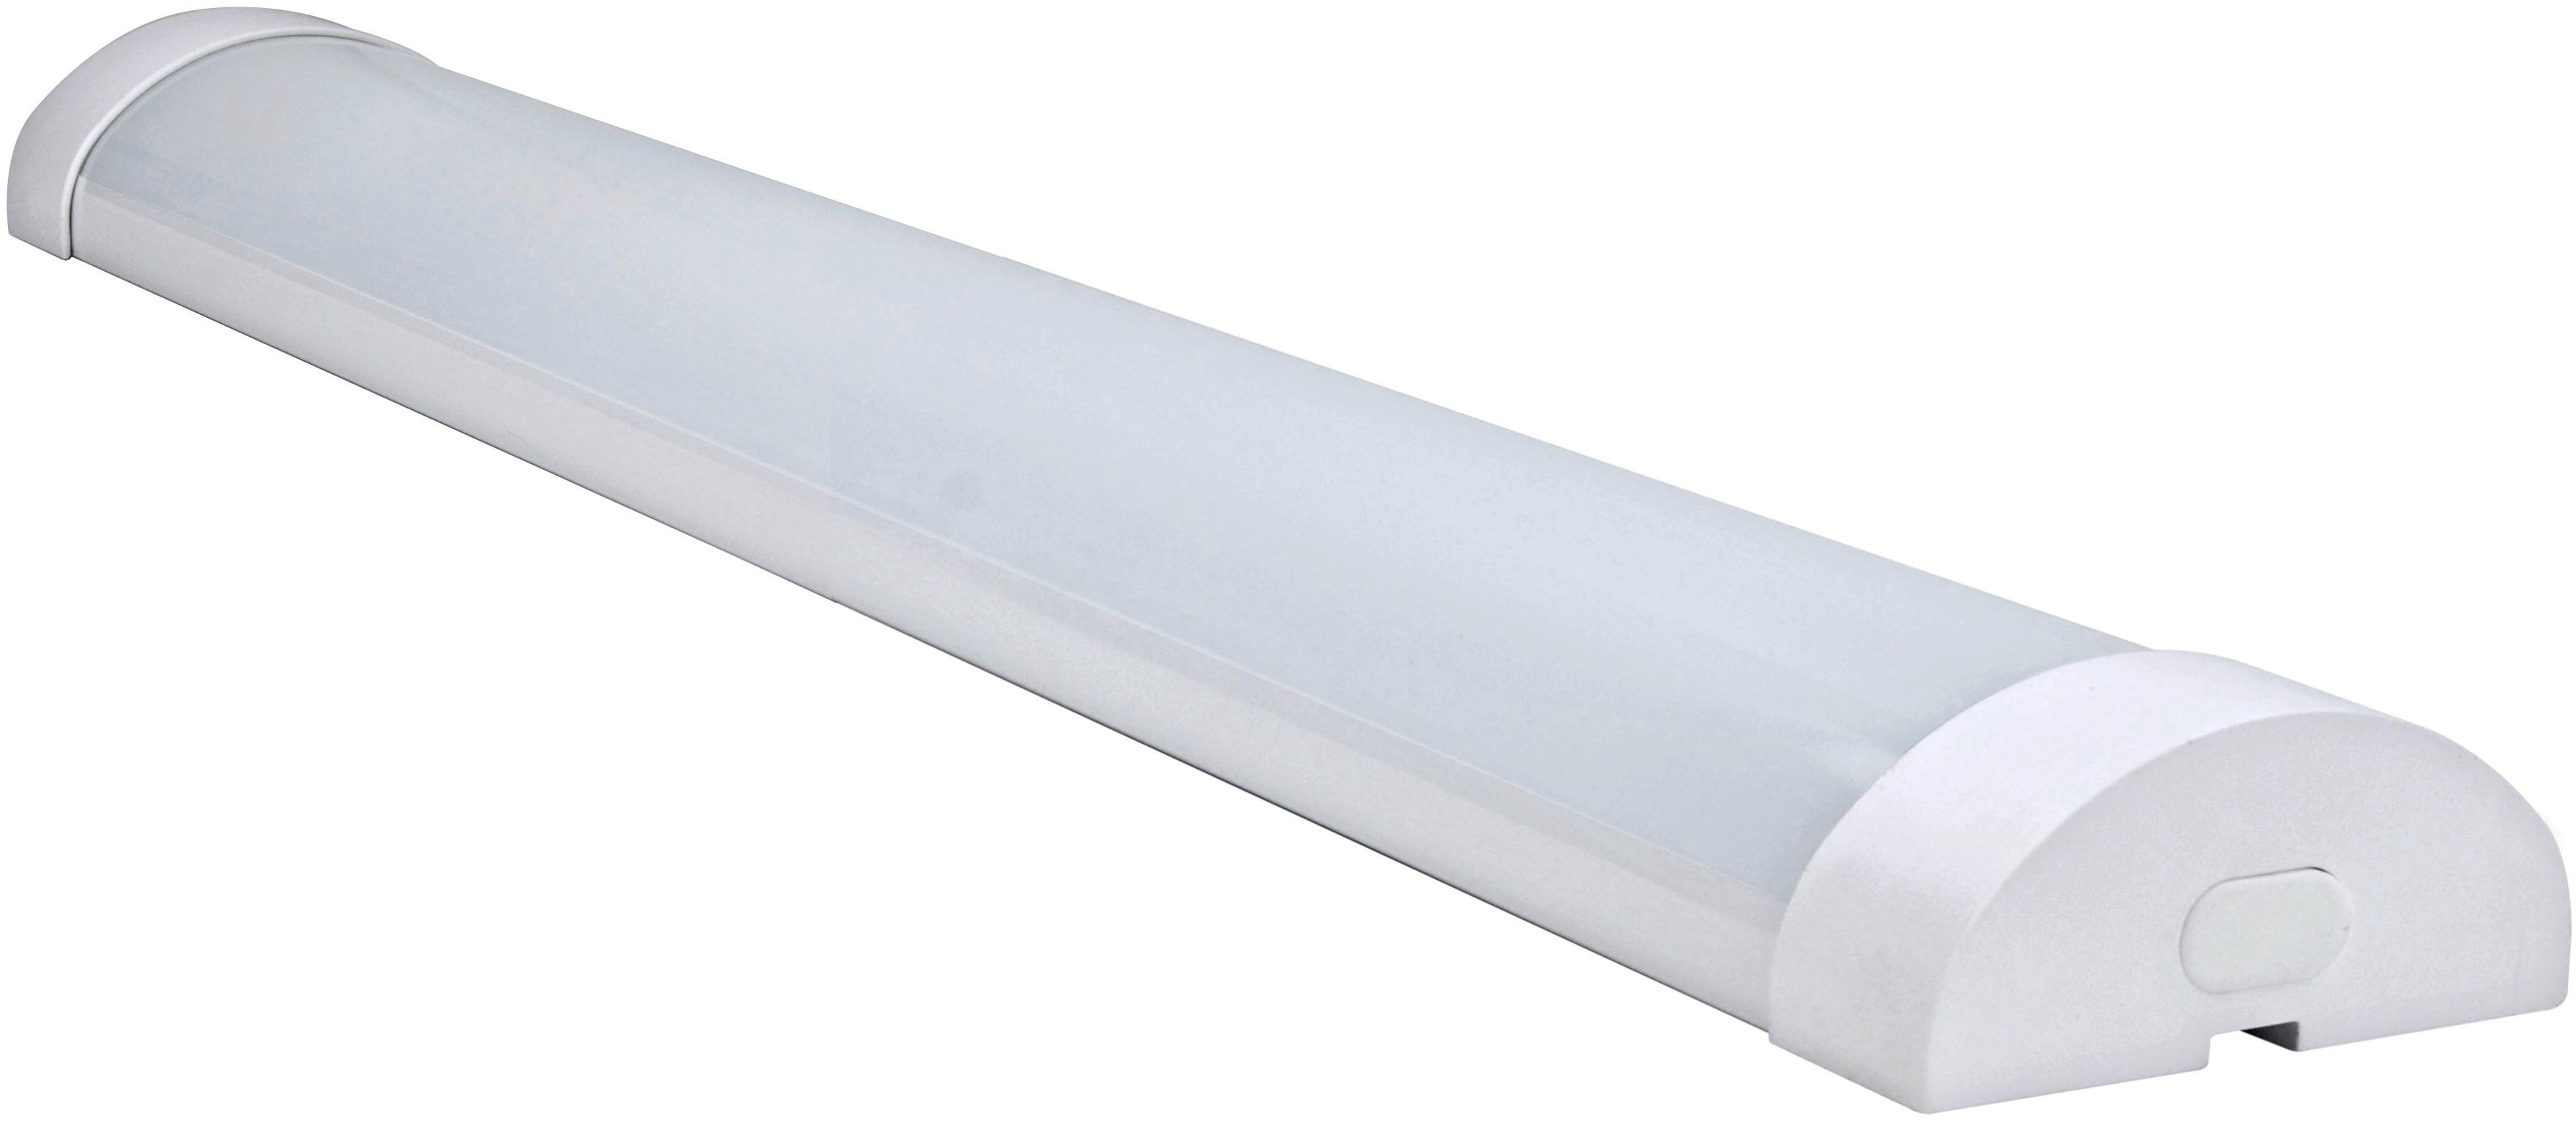 Unterbauleuchte 1x Led 24 W, aus Kunststoff Weiß 220-240 V - Weiß, Basics, Kunststoff (100/7,7/3,5cm)